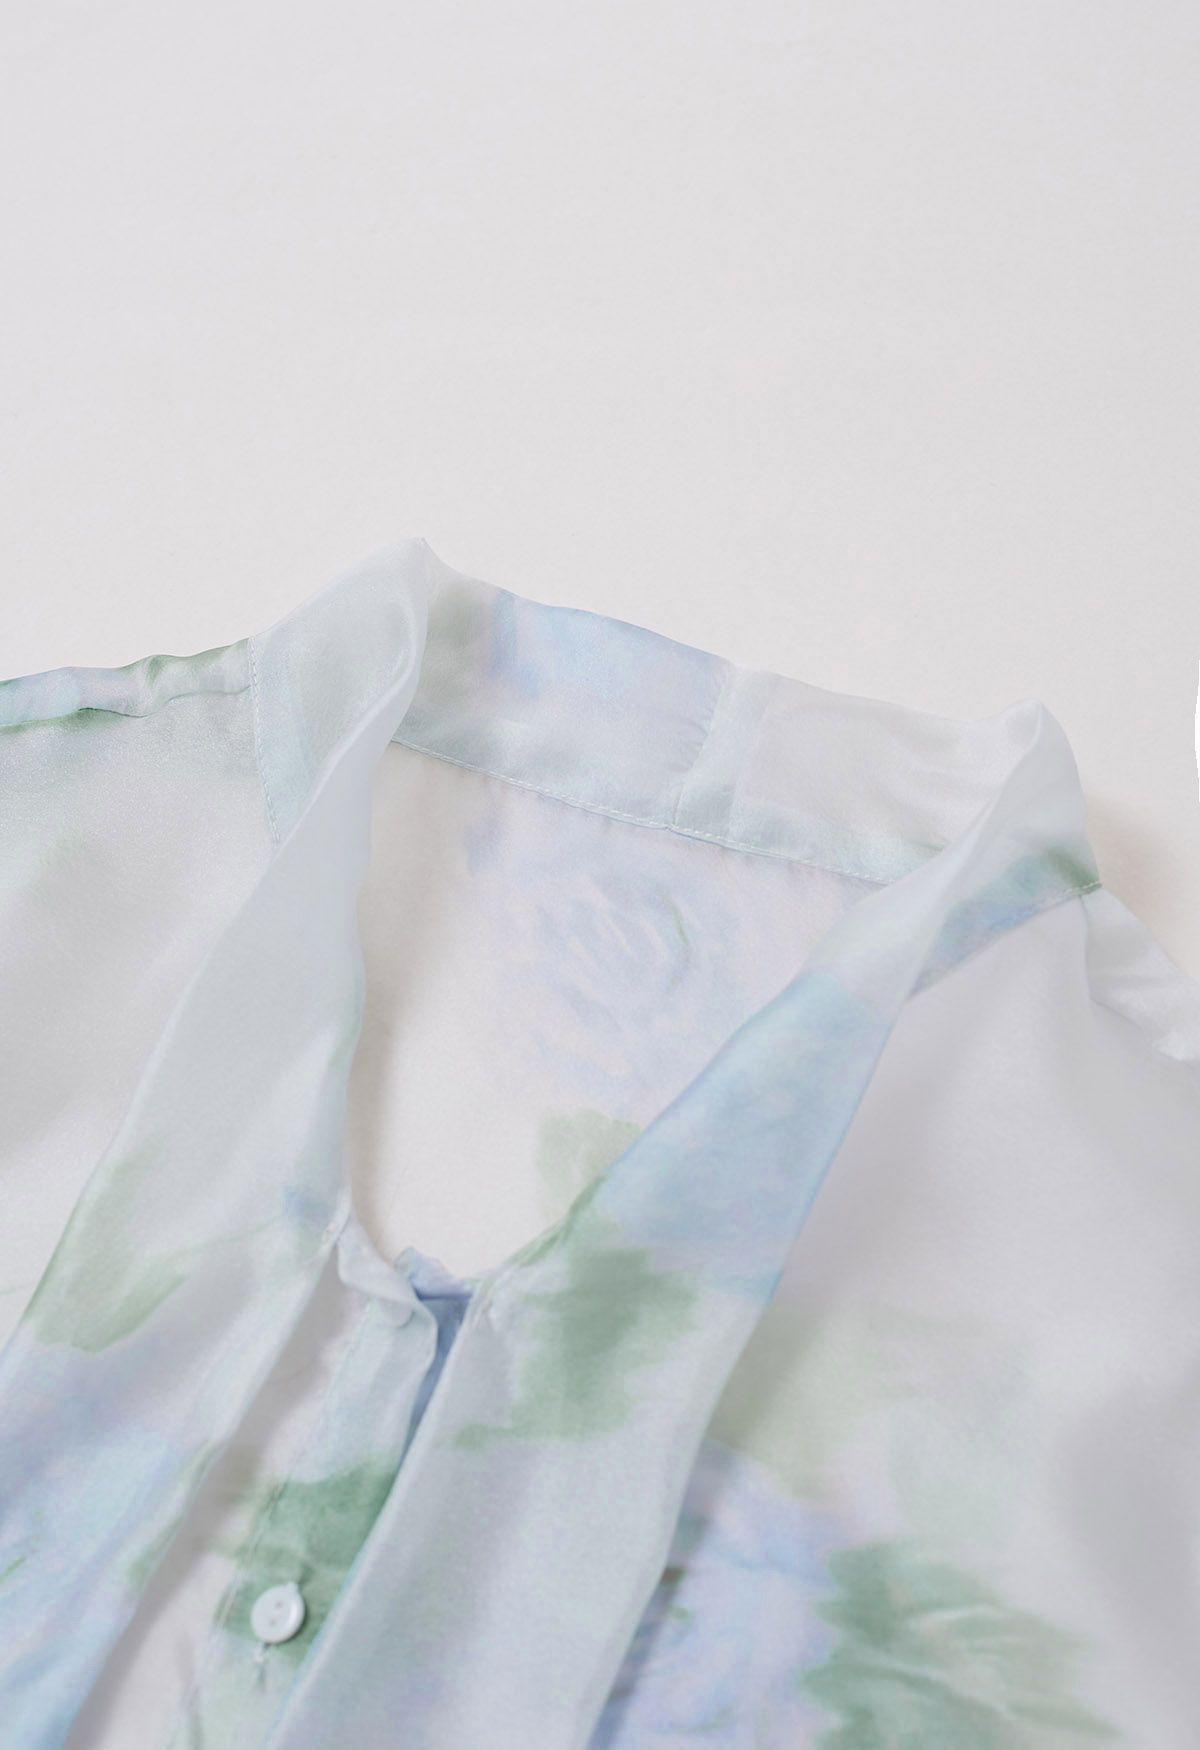 Chemise transparente à nœud floral et aquarelle passionnante en bleu